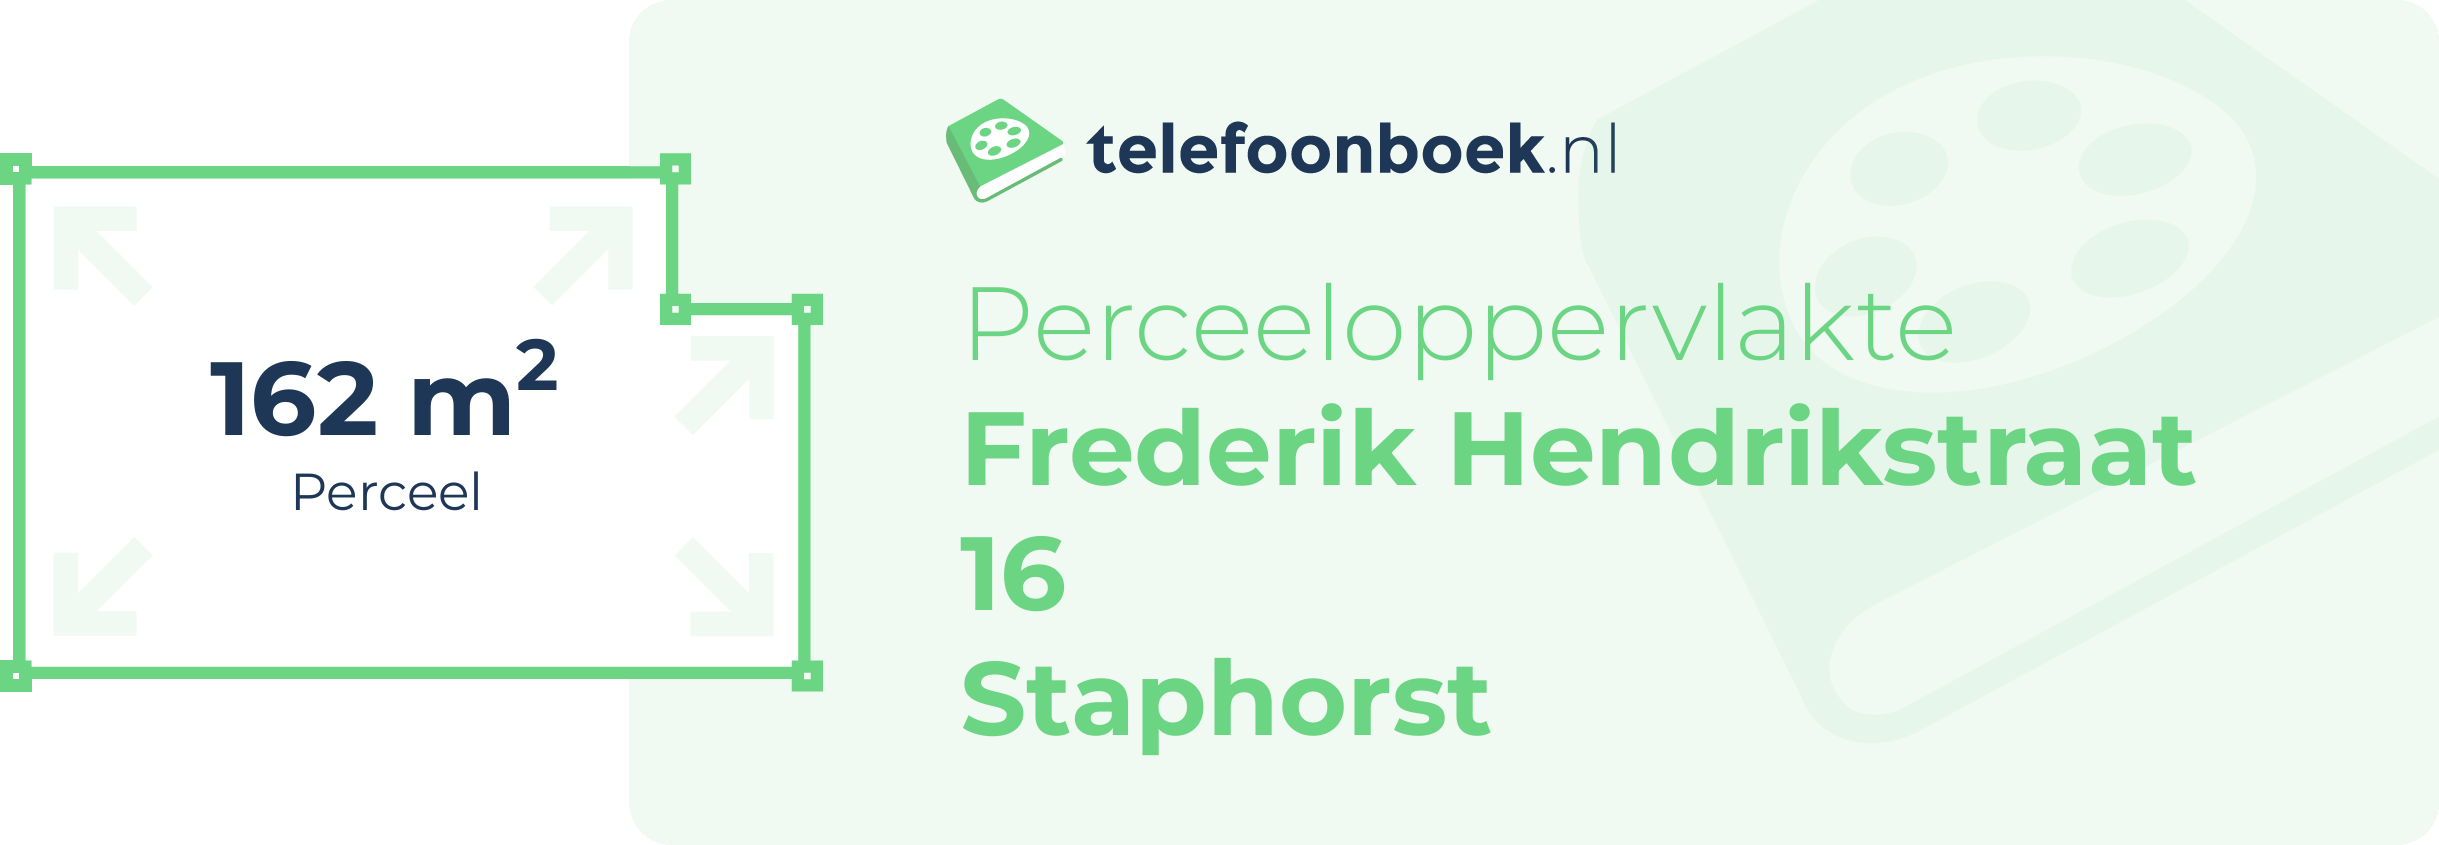 Perceeloppervlakte Frederik Hendrikstraat 16 Staphorst